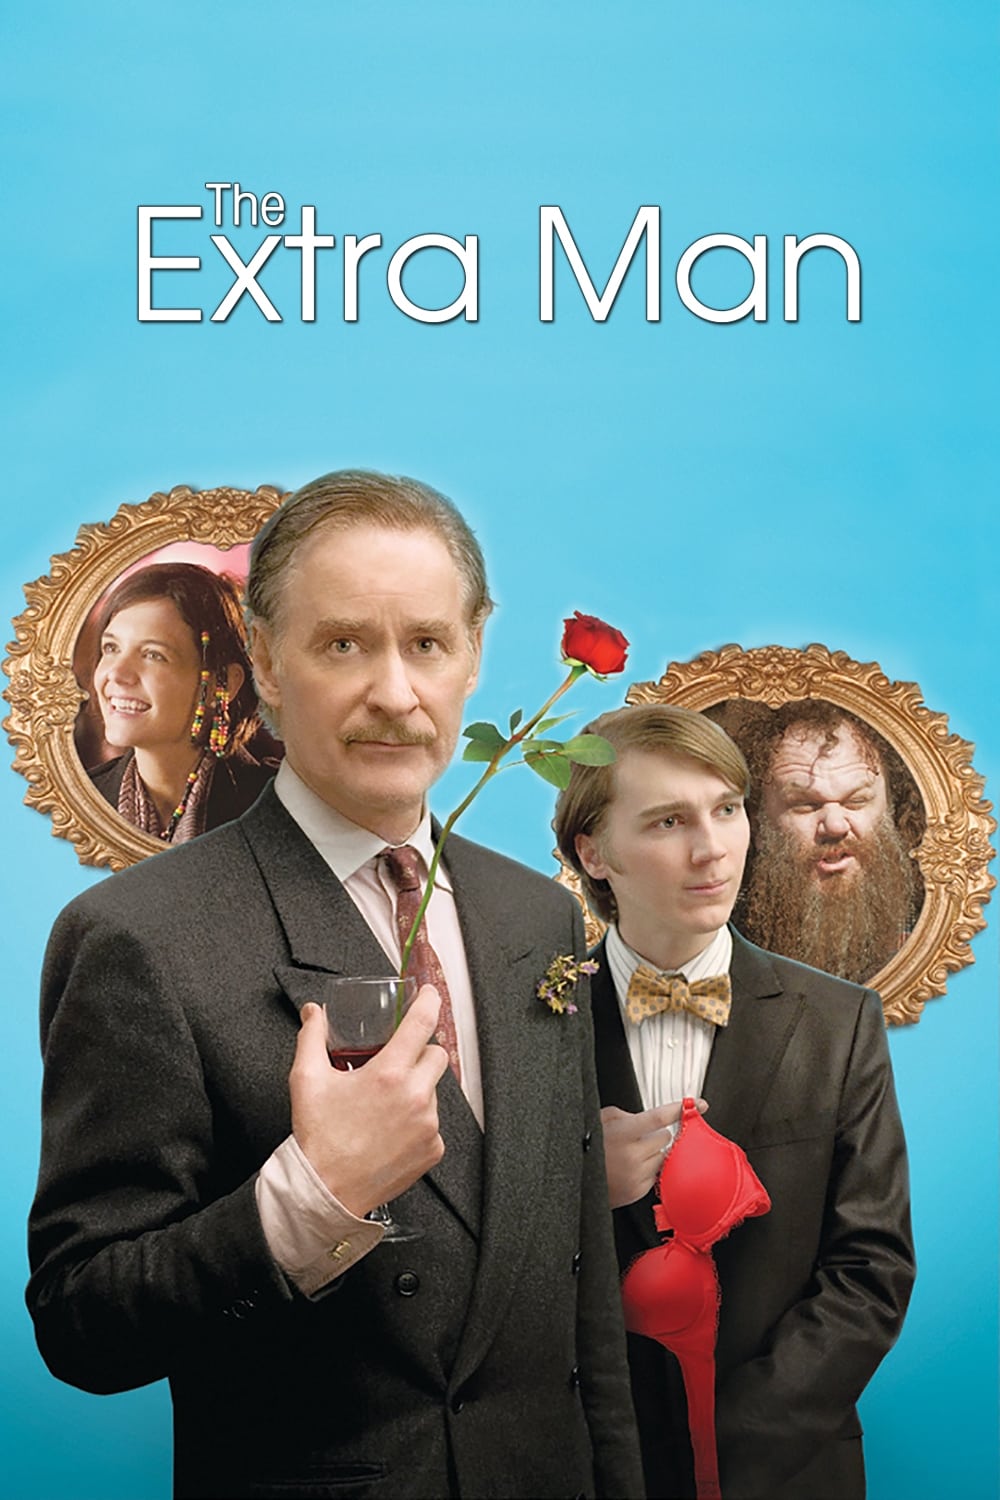 The extra man est-il disponible sur Netflix ou autre ?